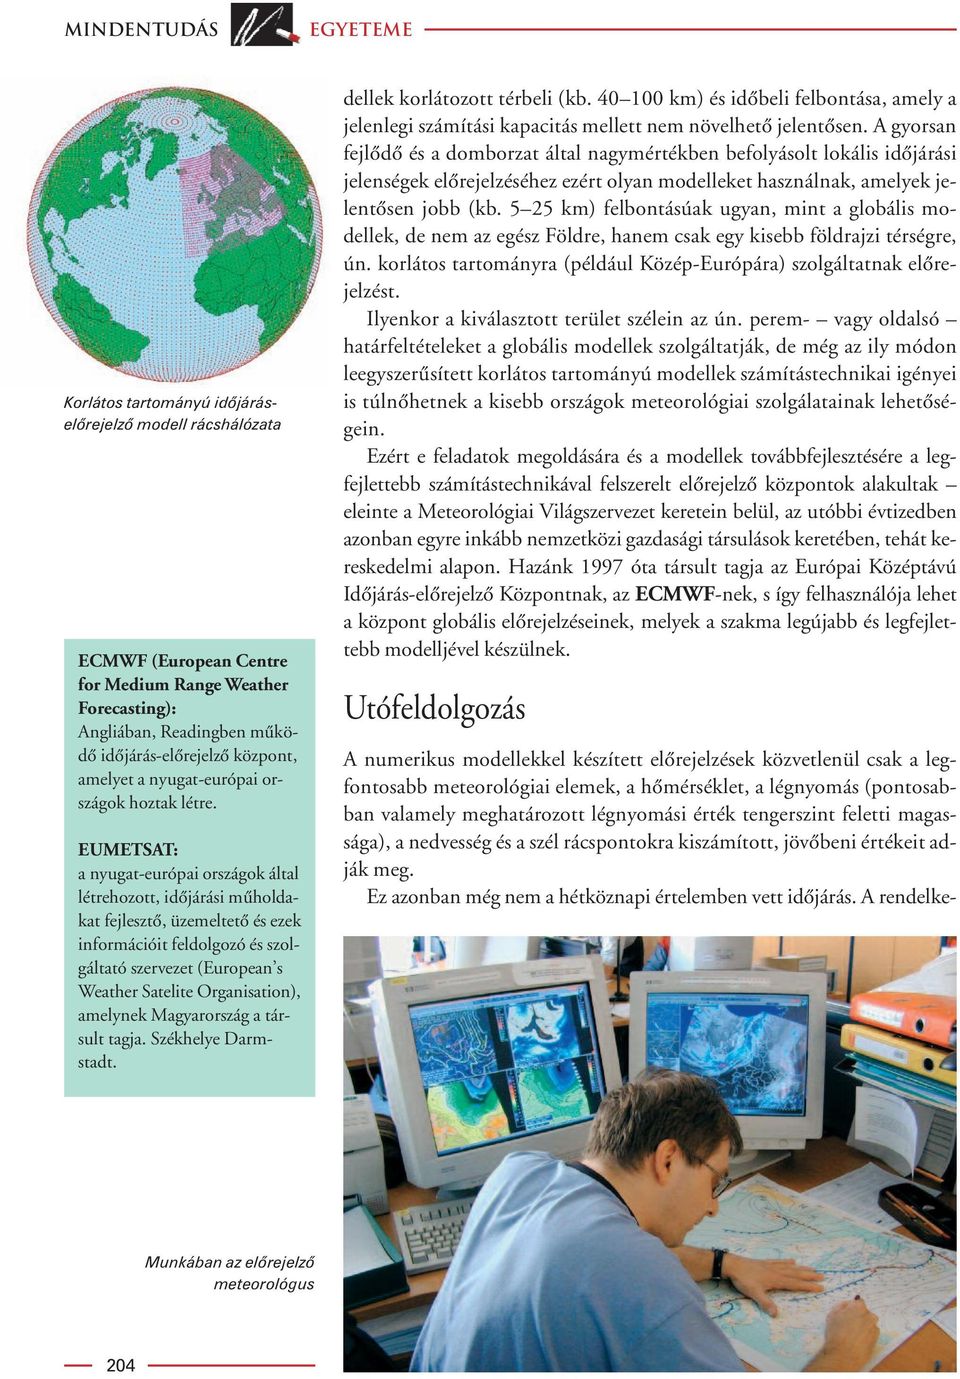 EUMETSAT: a nyugat-európai országok által létrehozott, idôjárási mûholdakat fejlesztô, üzemeltetô és ezek információit feldolgozó és szolgáltató szervezet (European s Weather Satelite Organisation),